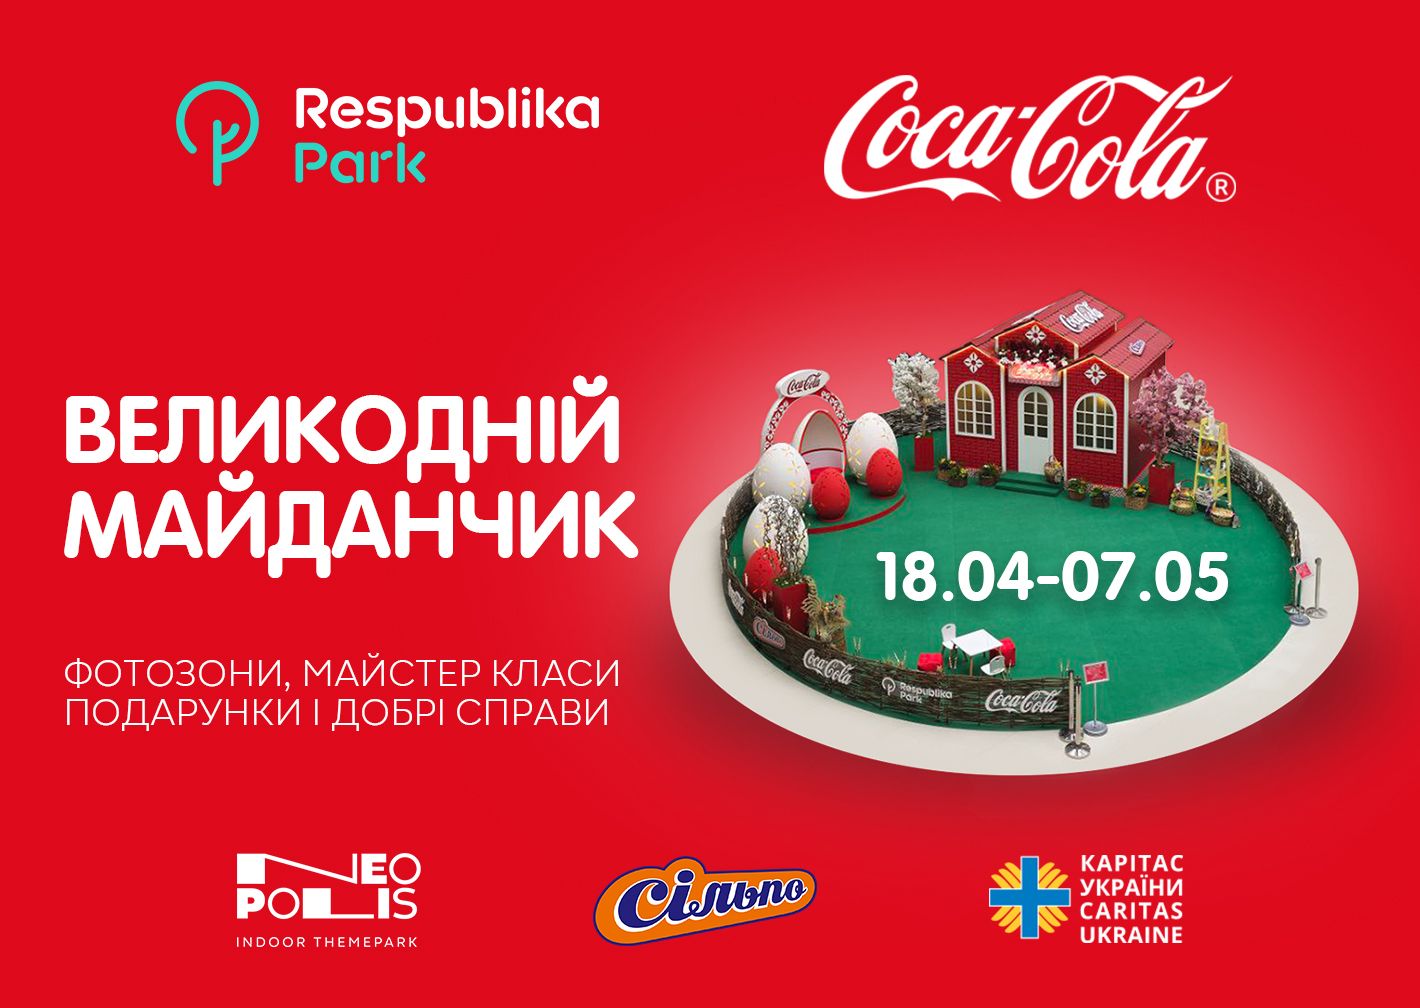 18.04 - 07.05 Великодній Майданчик від Coca Cola в ТРЦ Respublika Park! Thumbnail